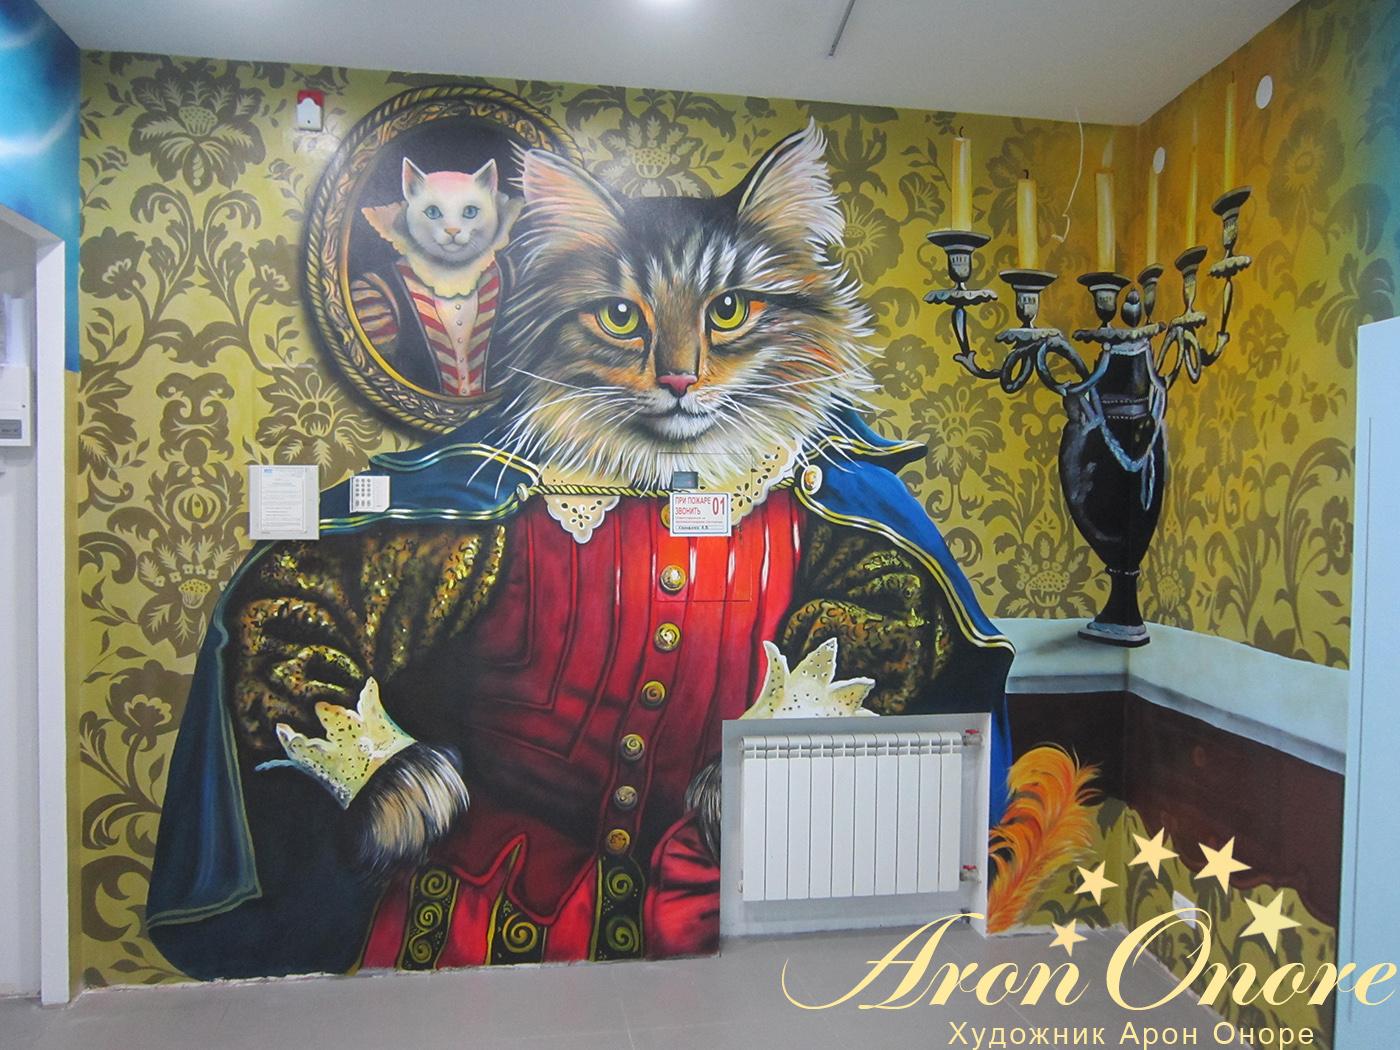 Художественный рисунок на стене в доме детской одежды – сказочный кот